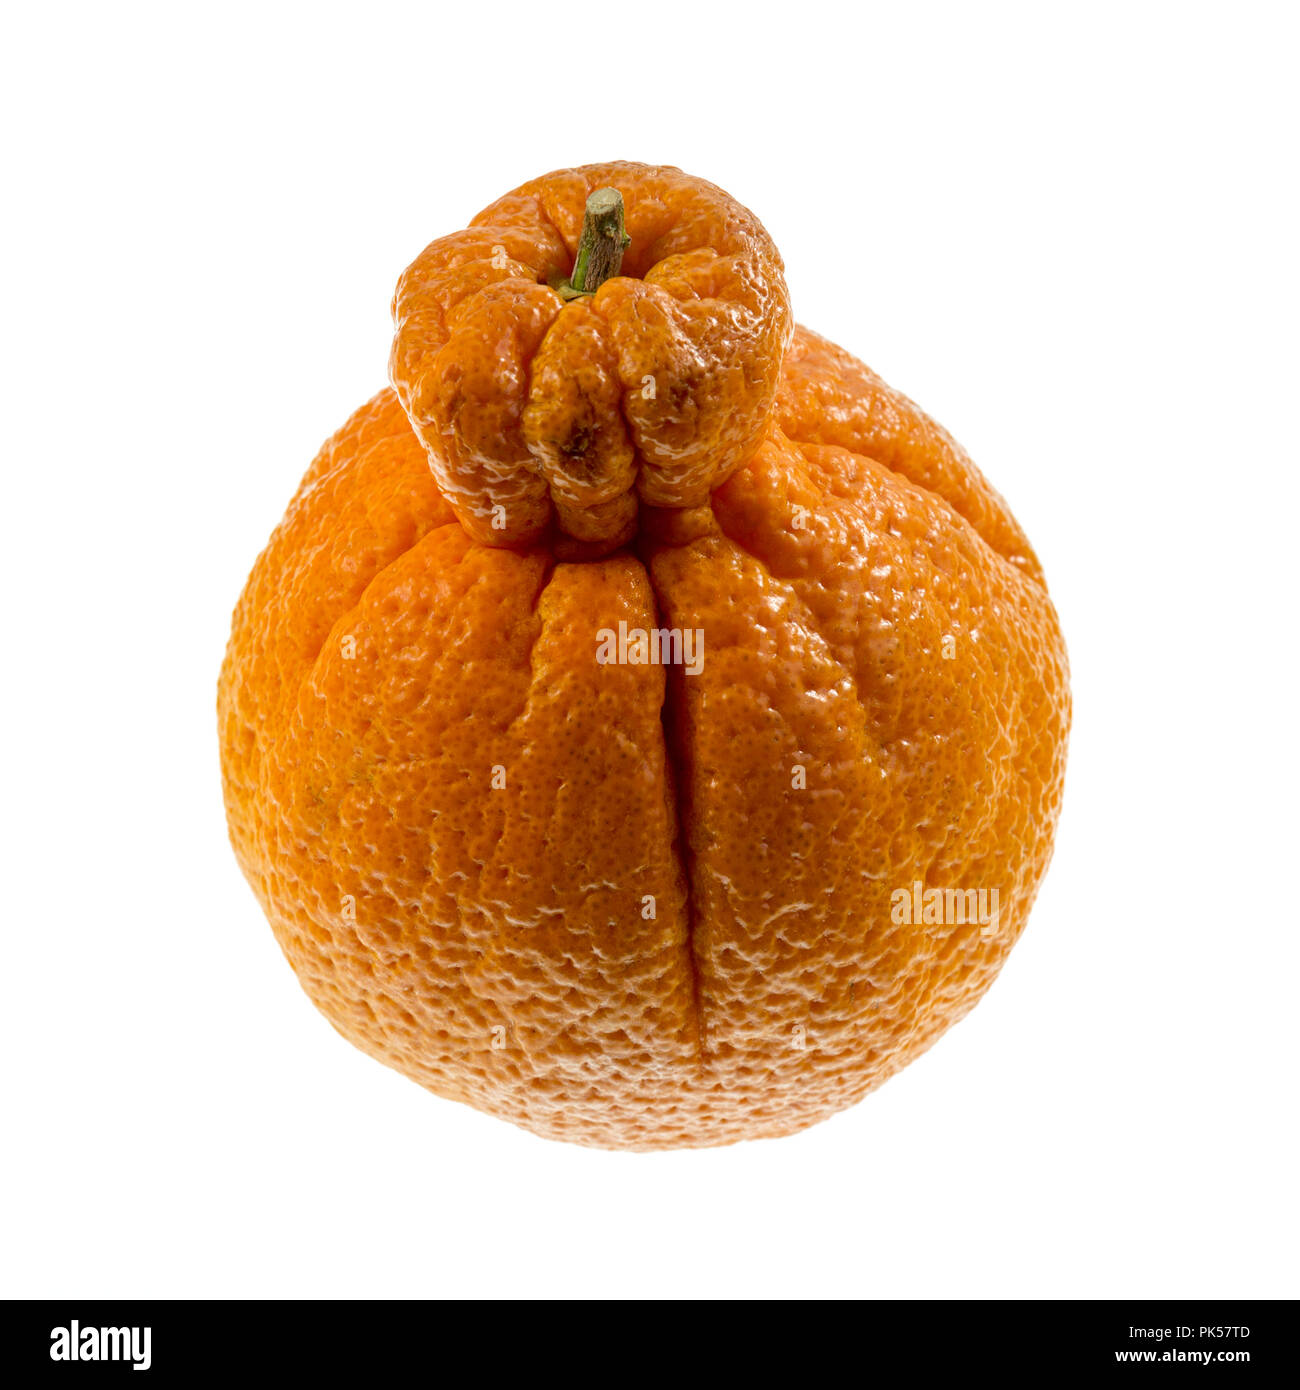 Agrumes de Sumo, appelé aussi dekopon, est une variété sans pépins et Sweet Mandarin, distinctif en raison de sa grande taille et grande bosse saillante sur le dessus. Banque D'Images